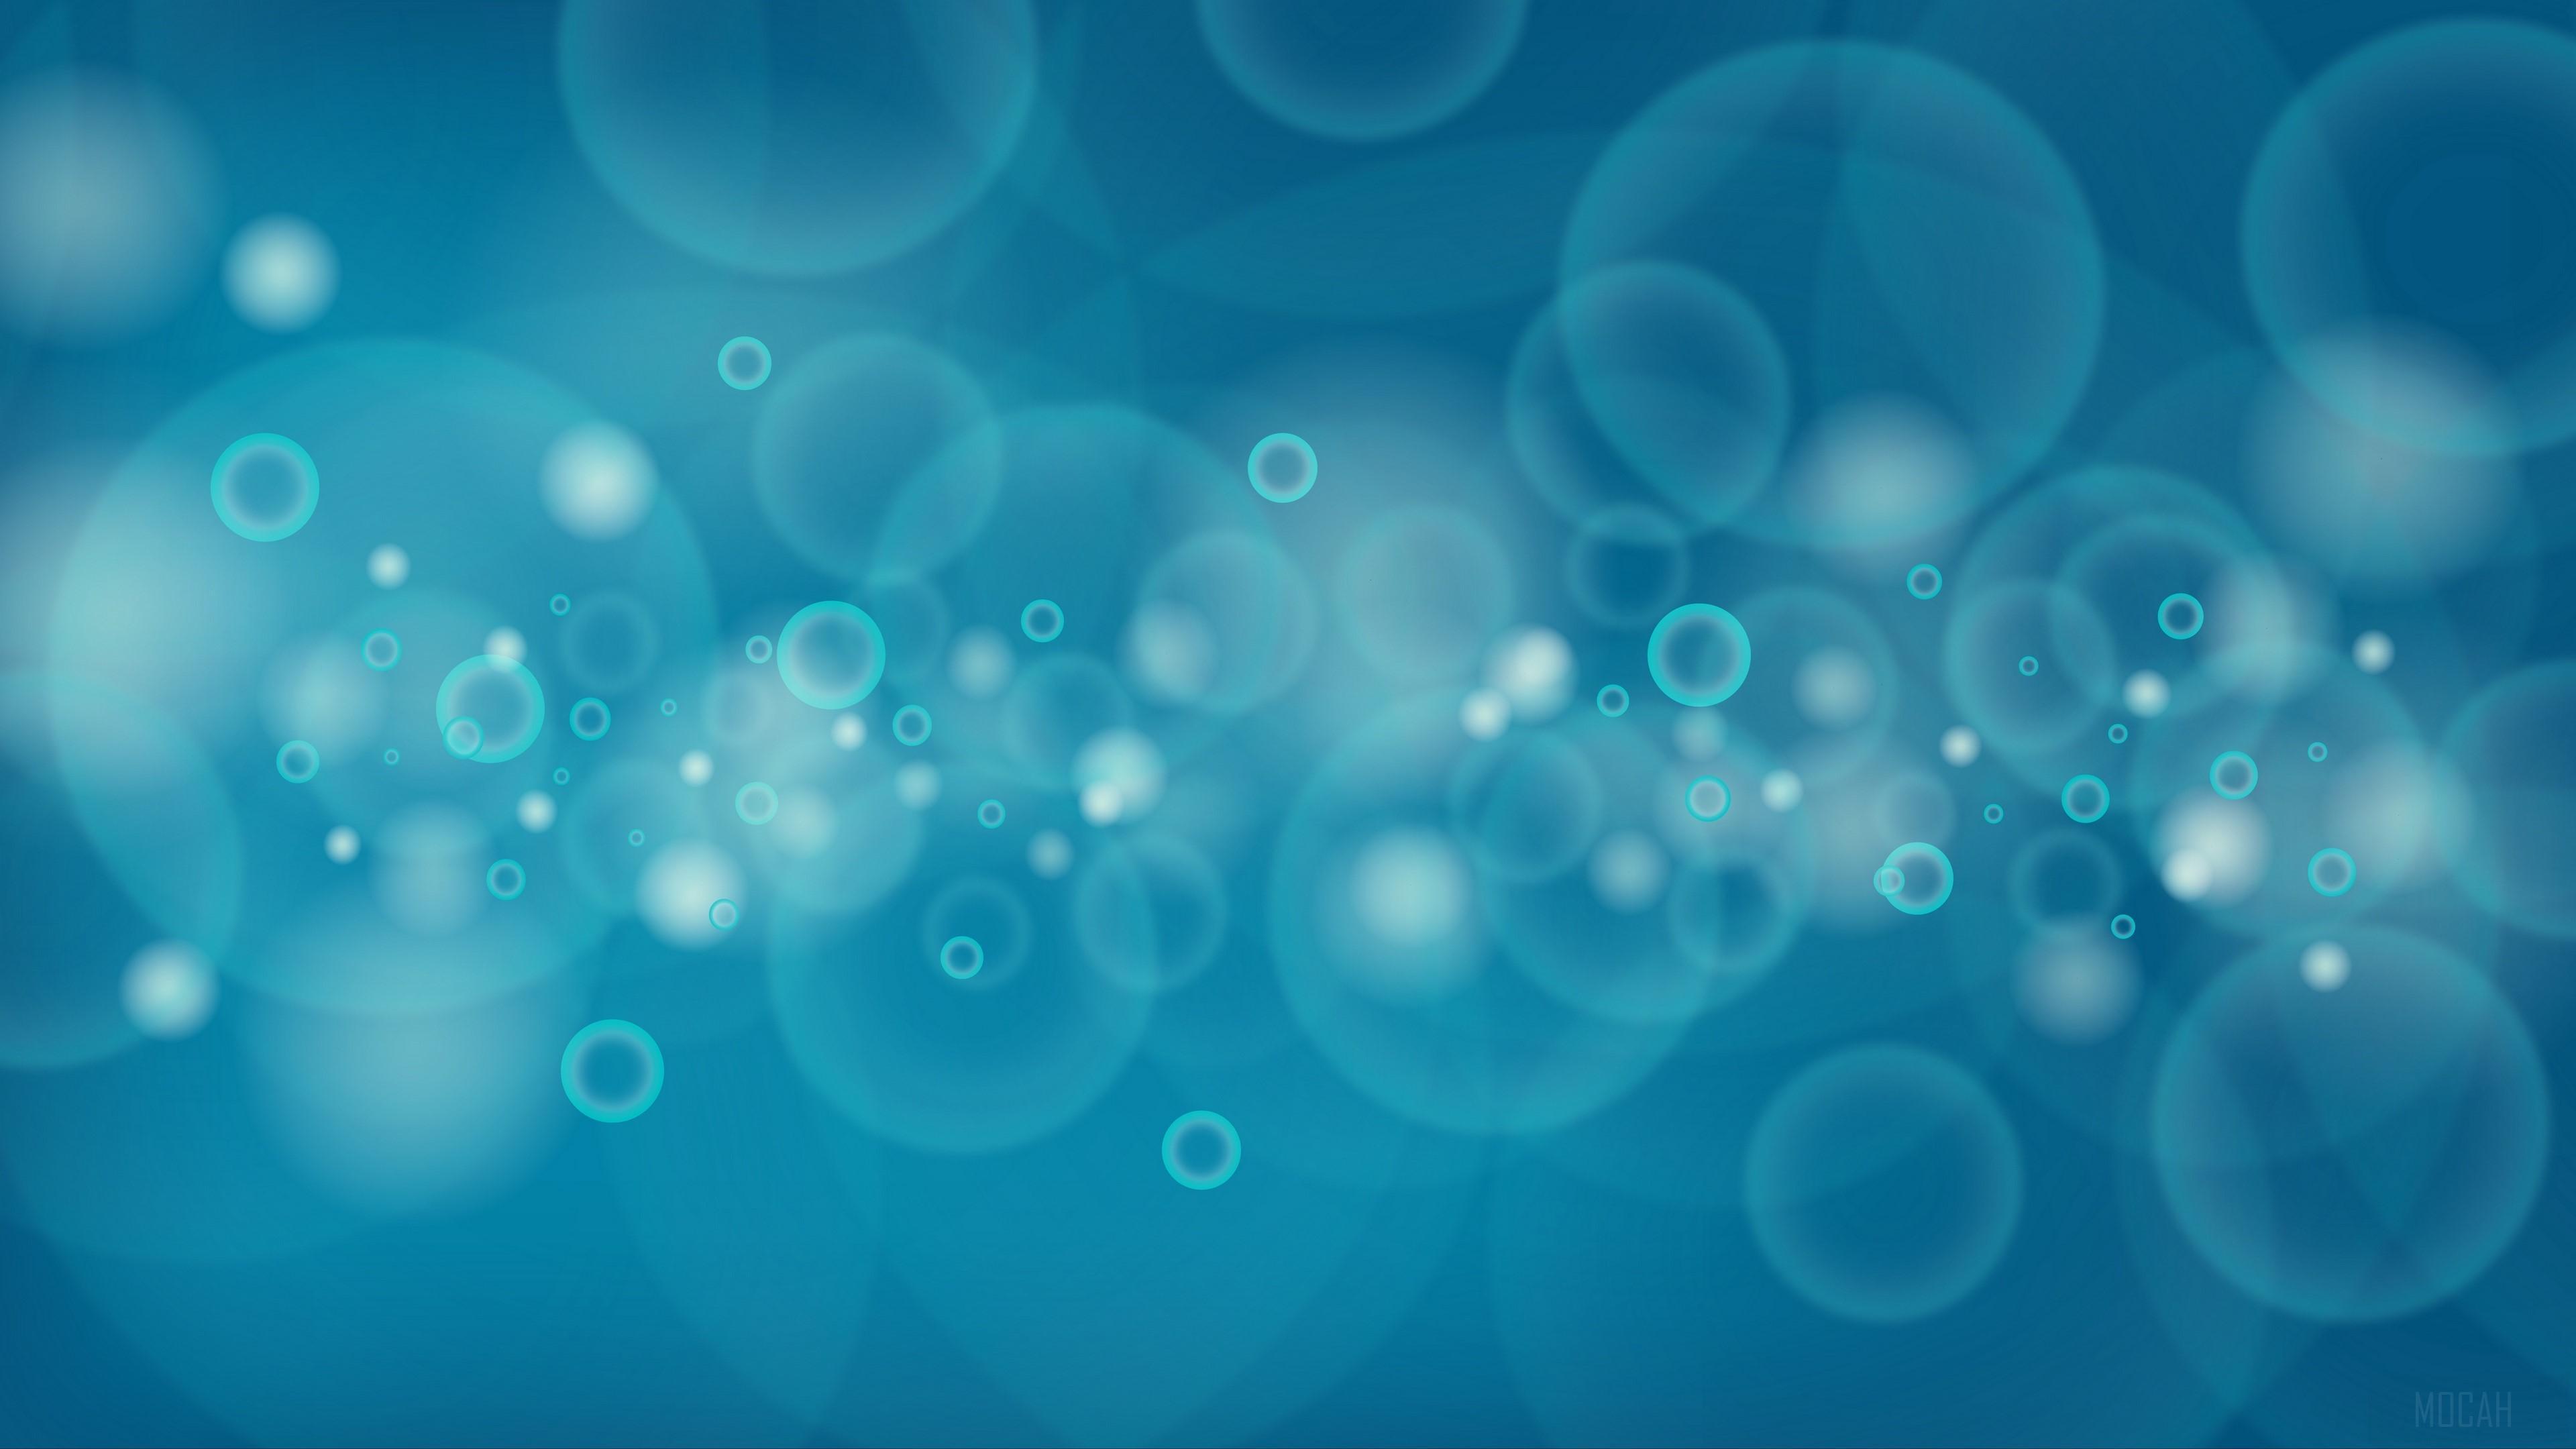 HD wallpaper, Bubbles, Circles, Blue 4K